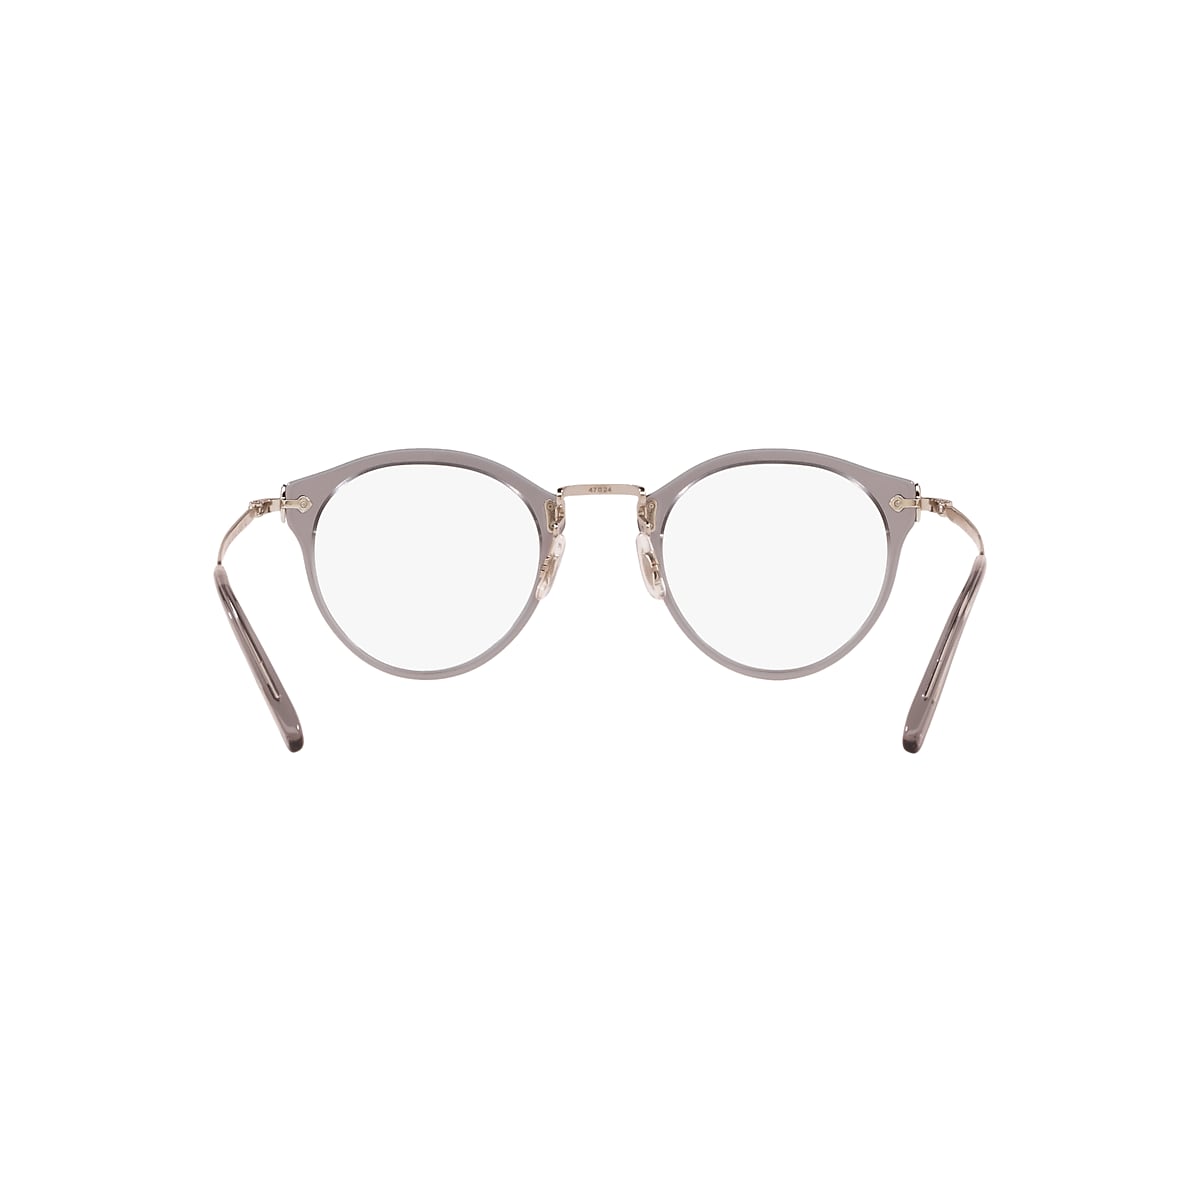 Oliver OP-505 Eyeglasses in Workman Grey | Oliver®